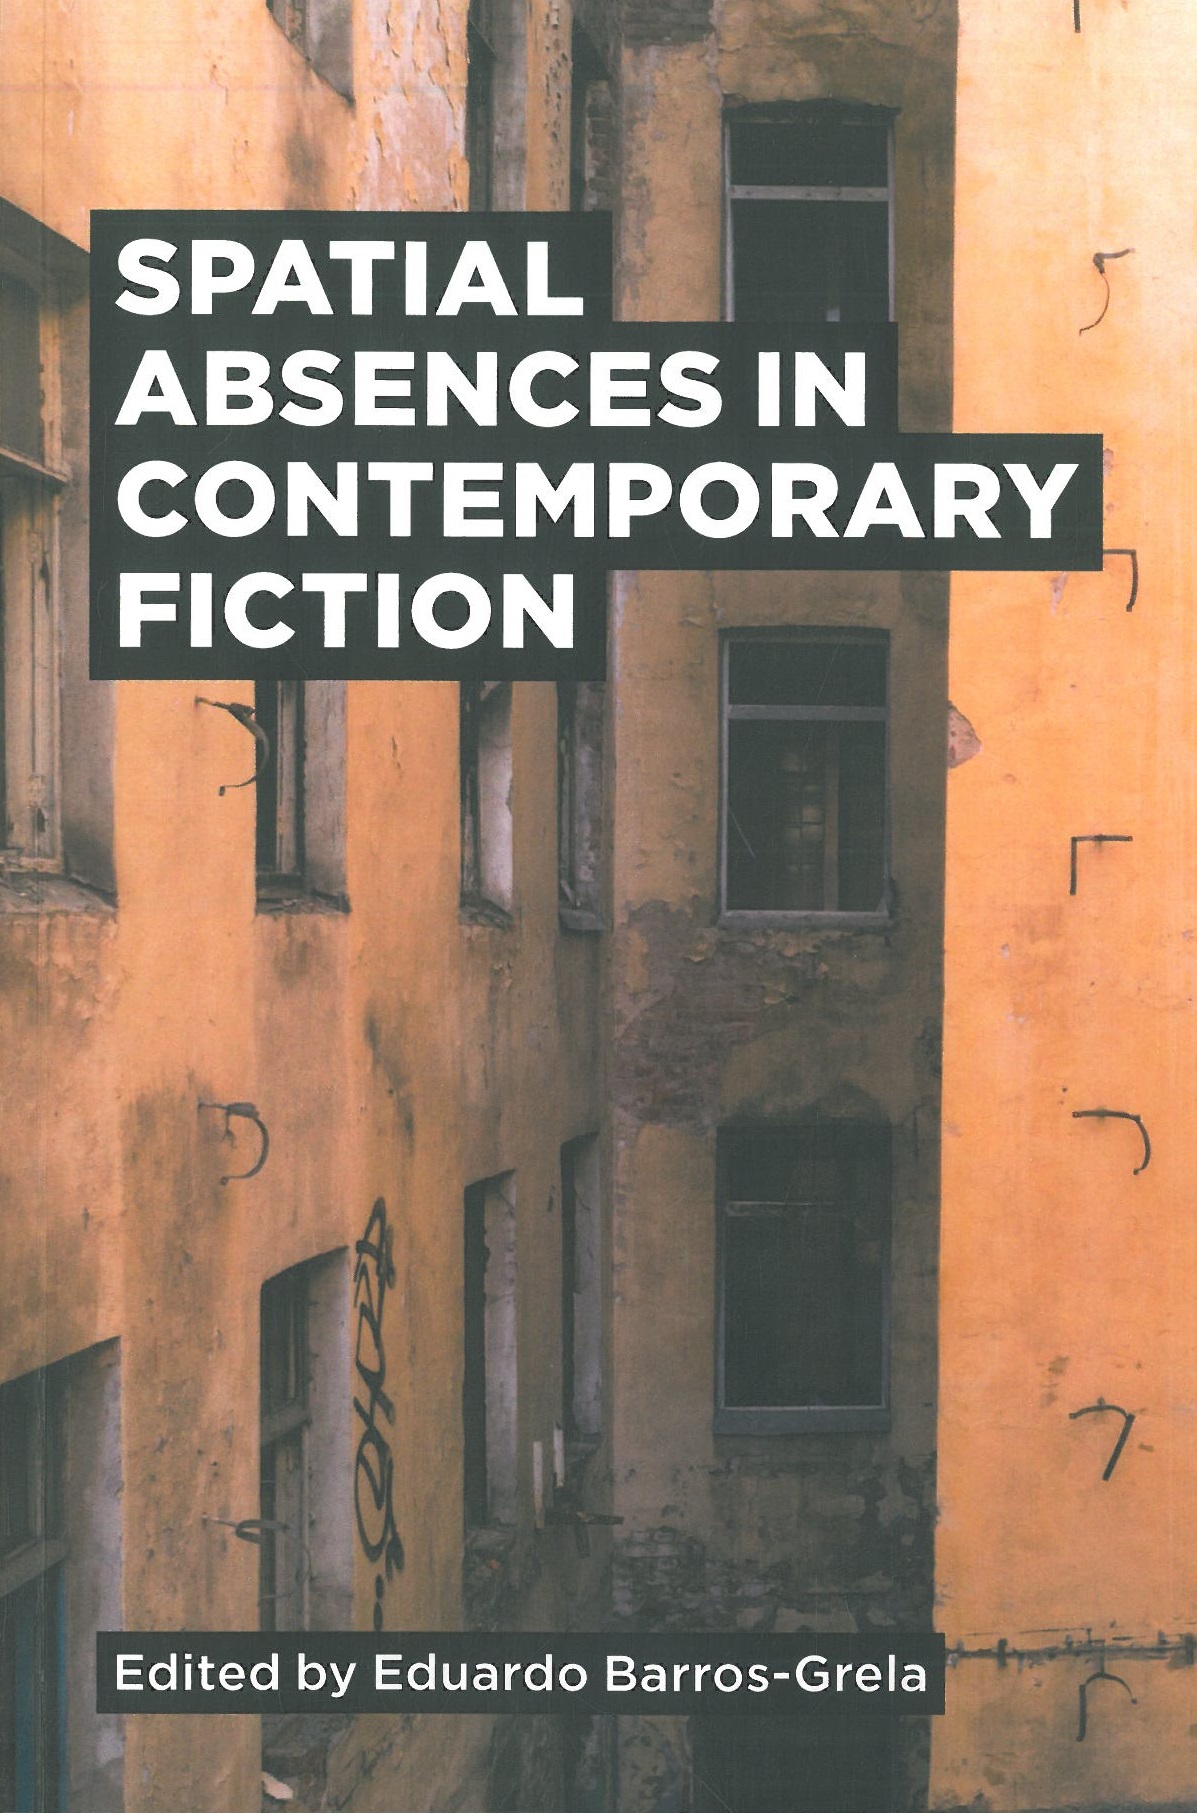 Imagen de portada del libro Spatial absences in Contemporary Fiction